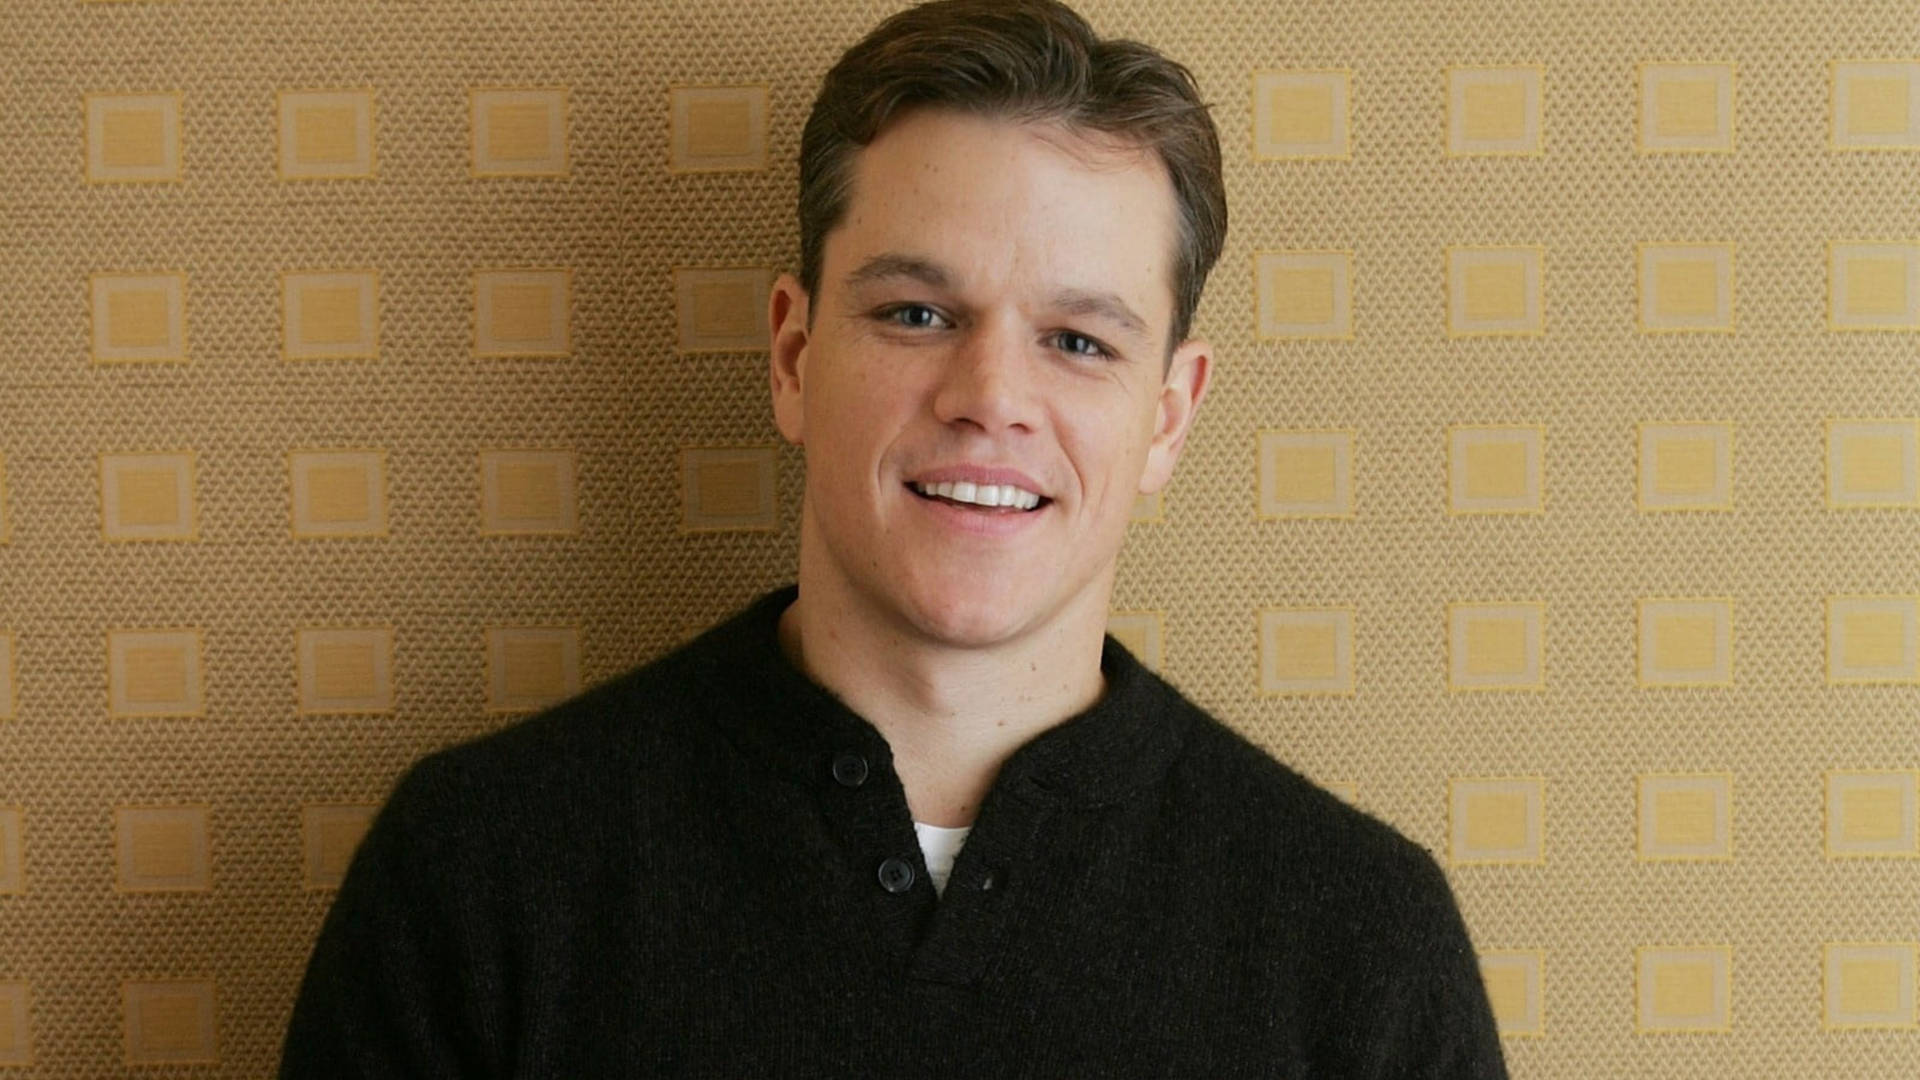 Matt Damon Mid-parted Hair